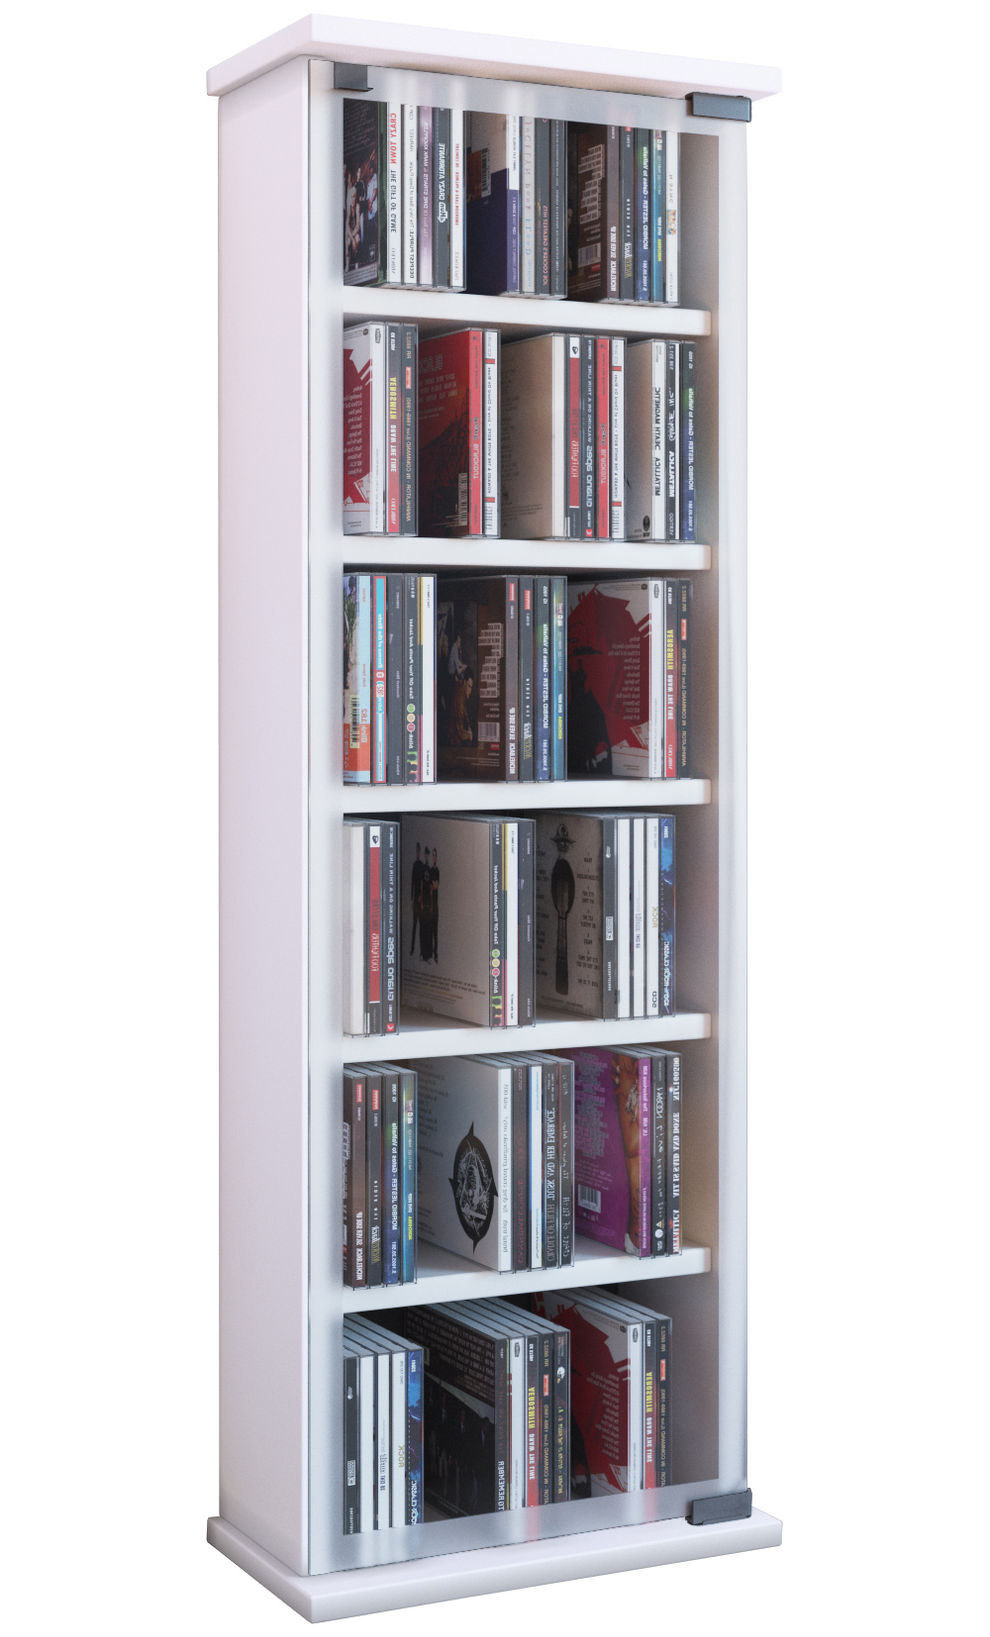 VCM Holz CD DVD Stand Regal Classic mit Glastür Farbe: Weiß | Weltbild.de